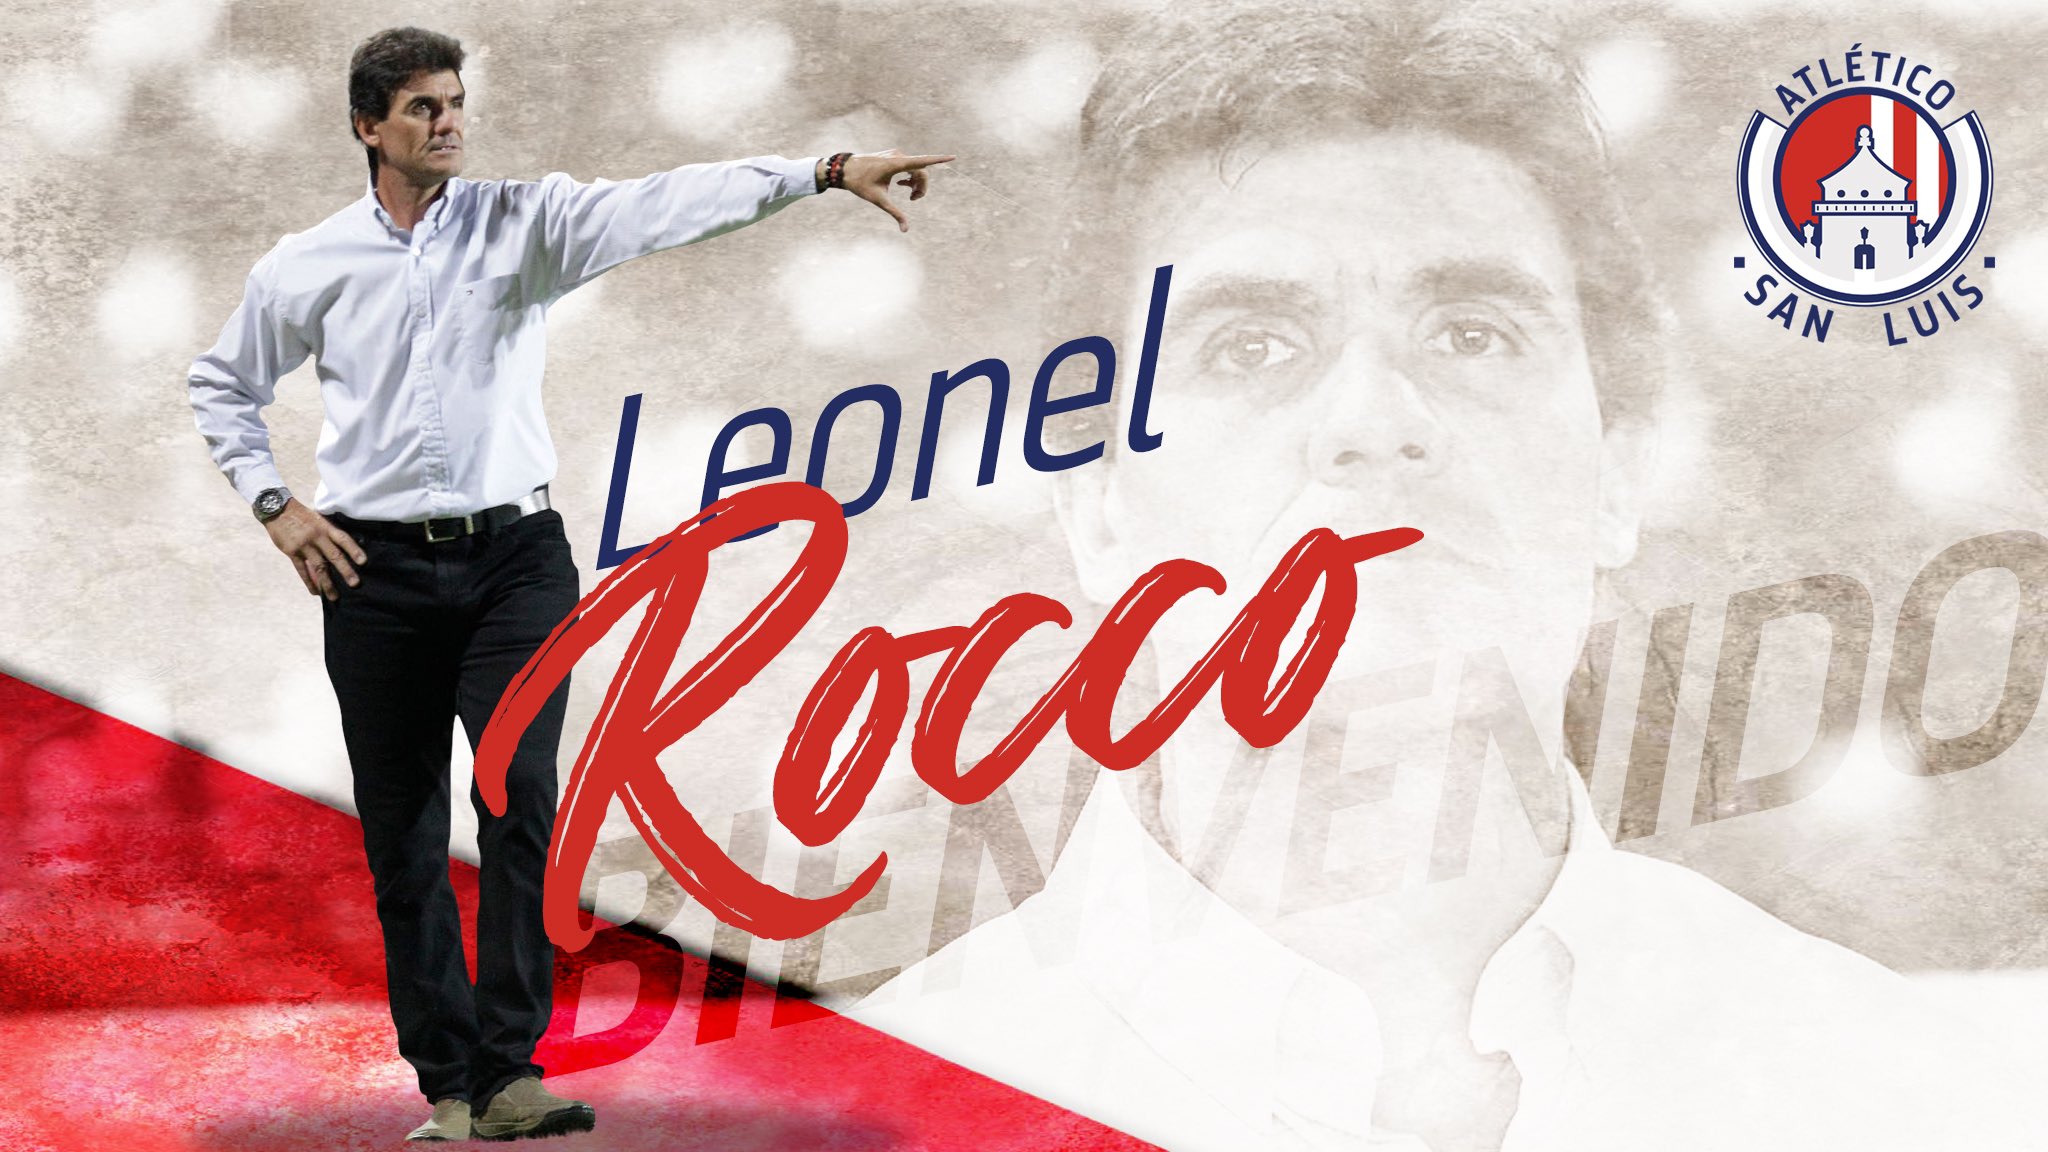 Leonel Rocco dirigirá al Atlético San Luis